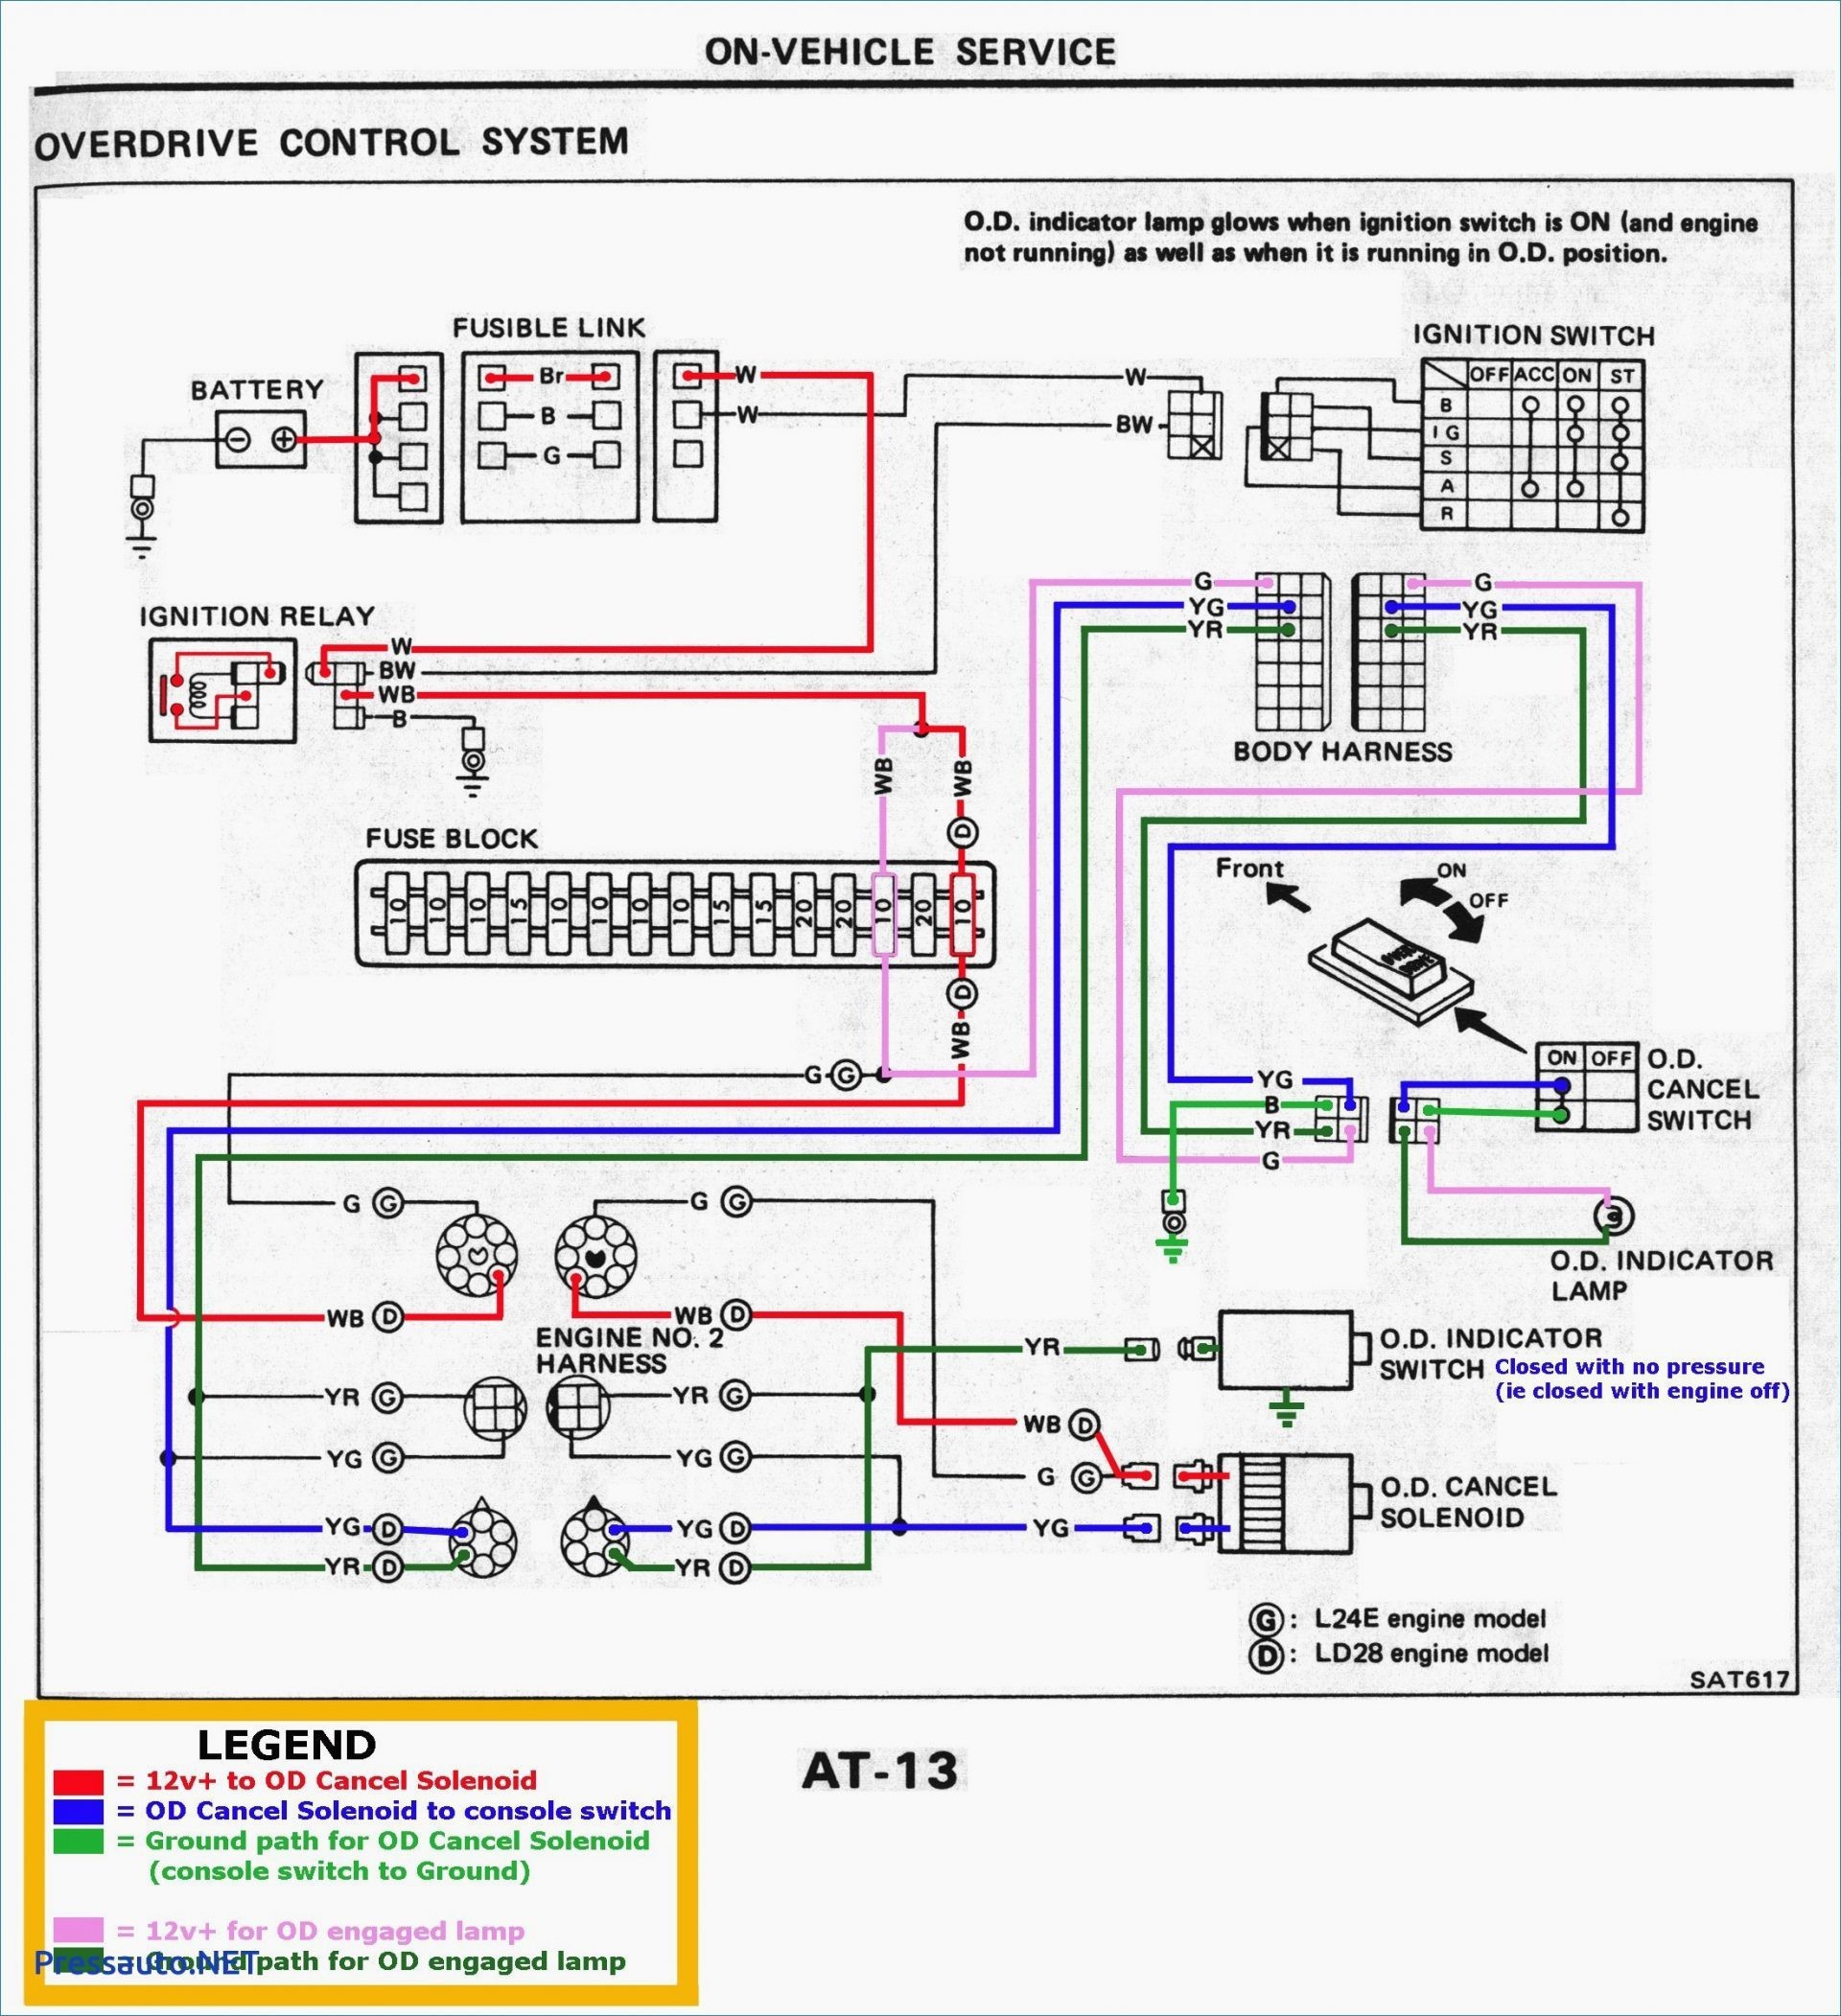 Ford F150 Engine Diagram Wiring Diagram ford Galaxy 2002 Wiring Diagrams Konsult Of Ford F150 Engine Diagram